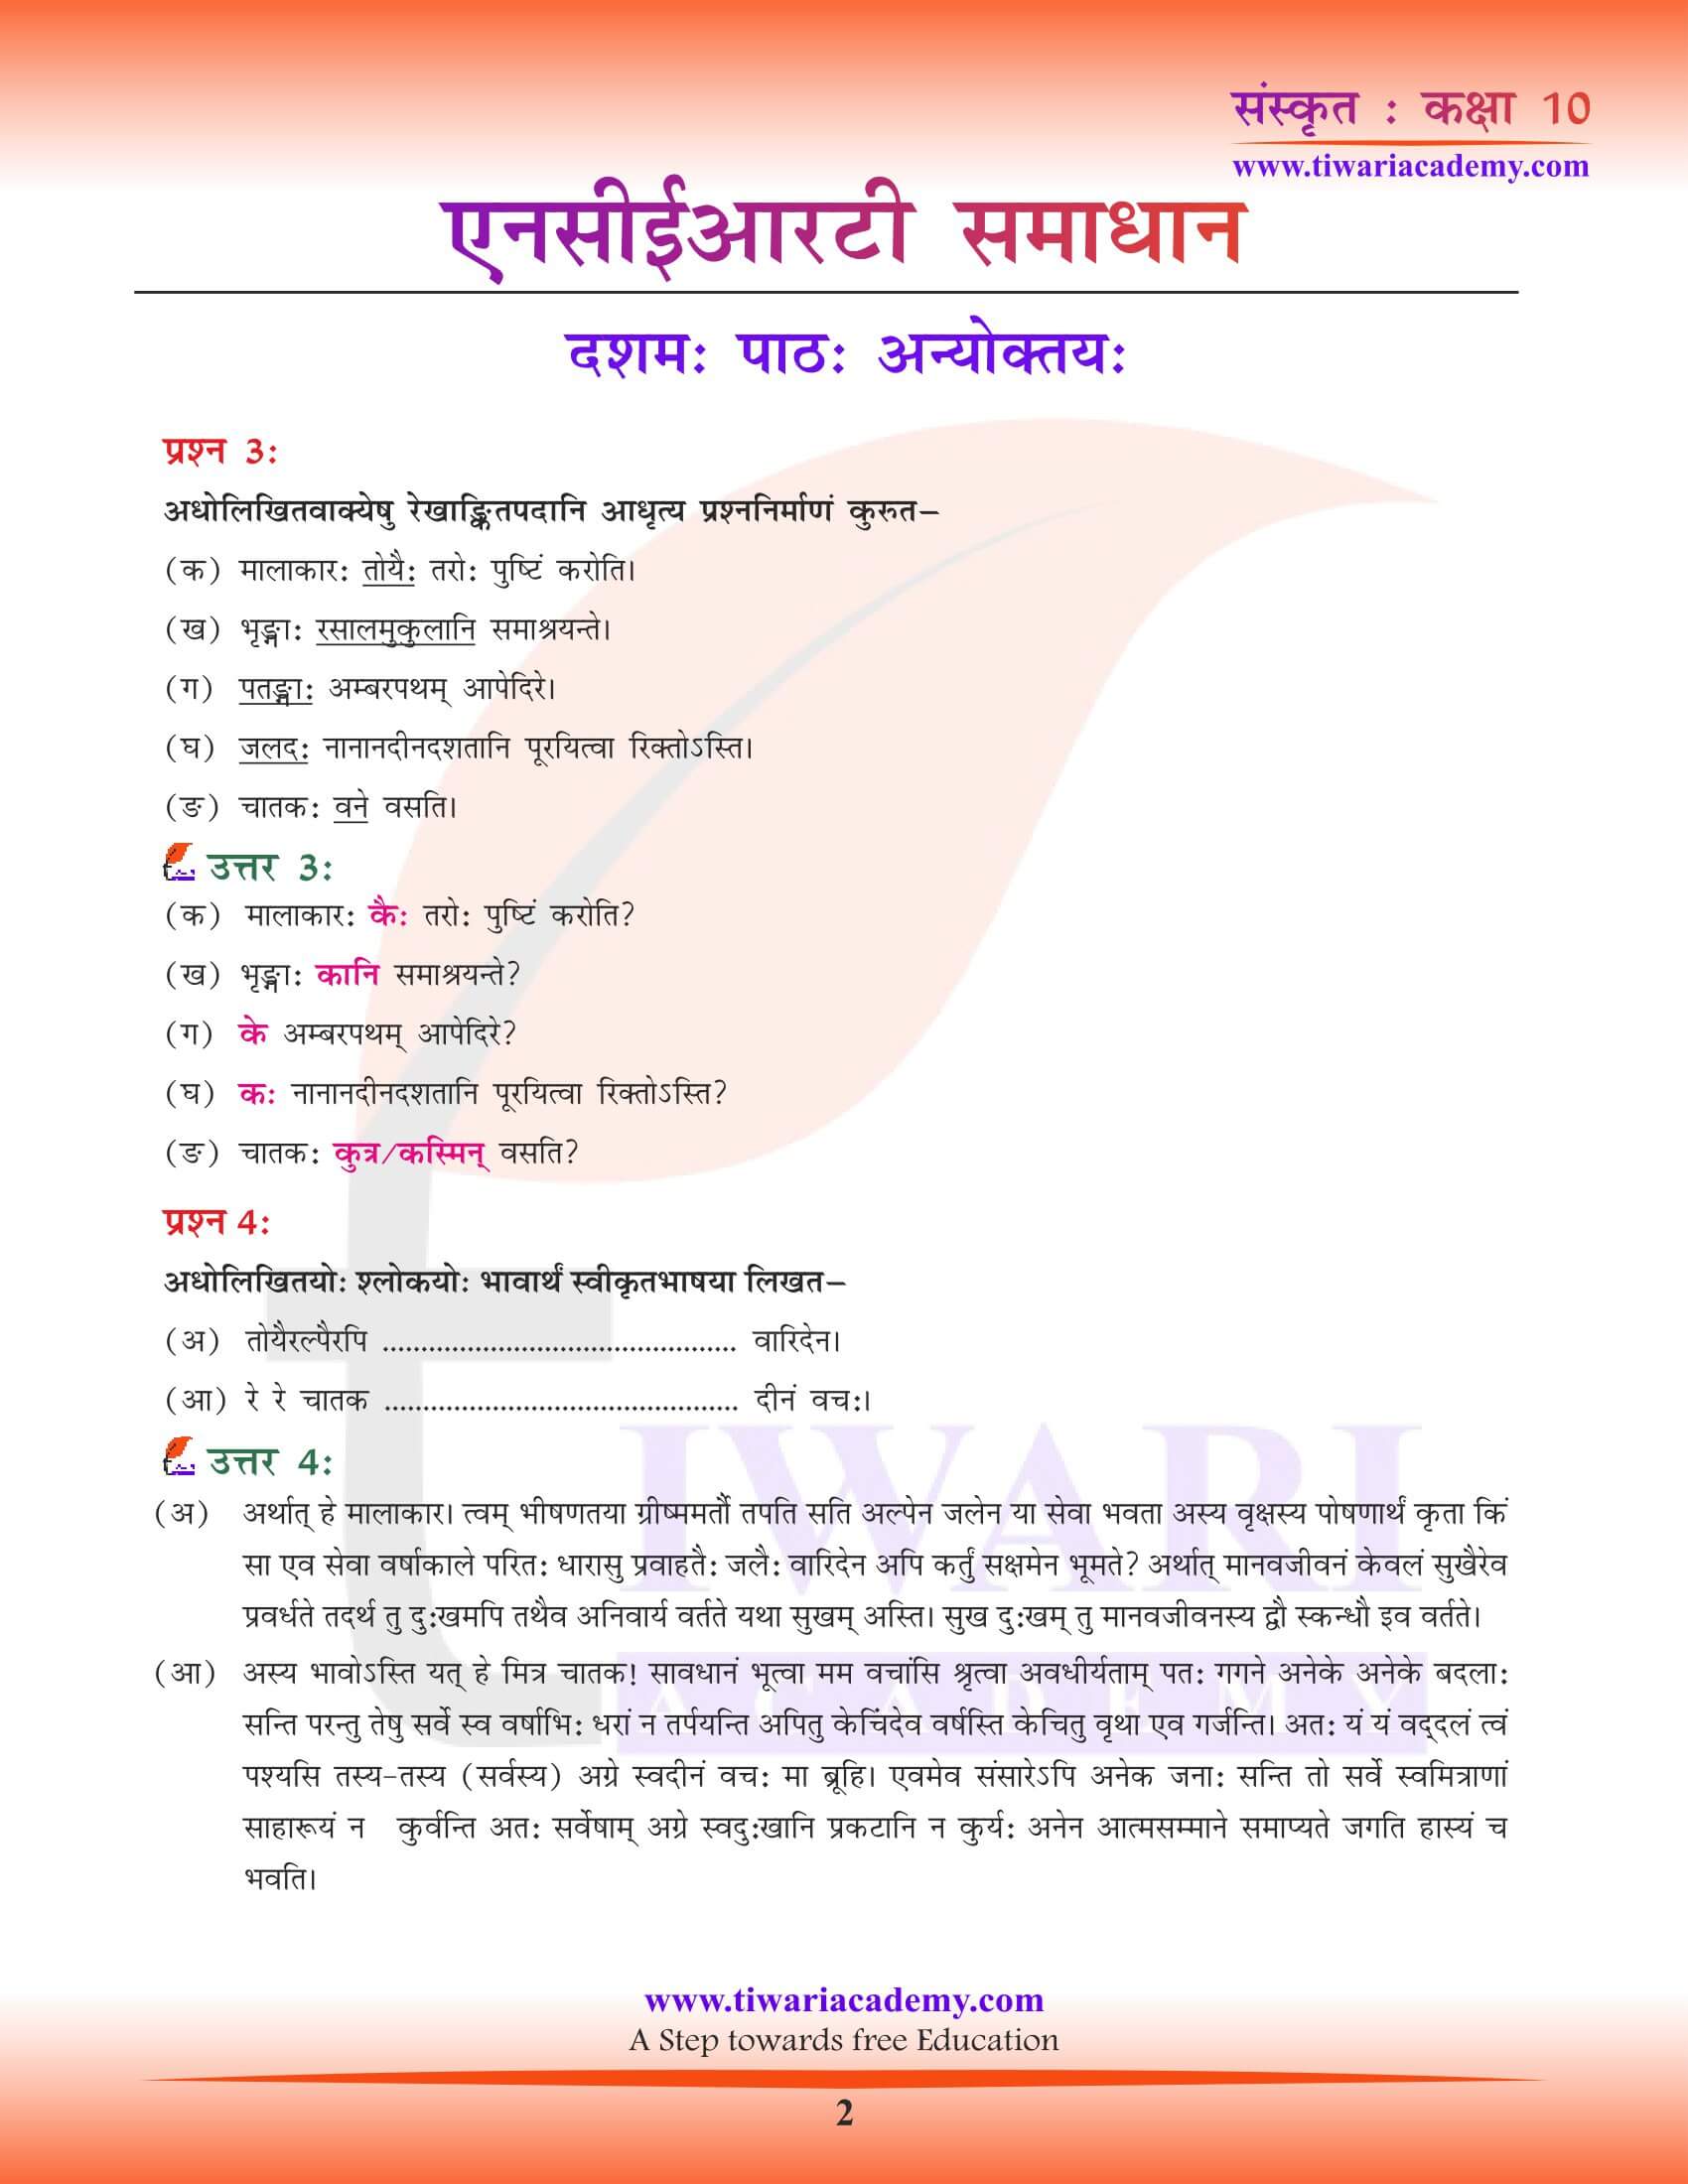 कक्षा 10 संस्कृत अध्याय 10 अन्योक्तय: